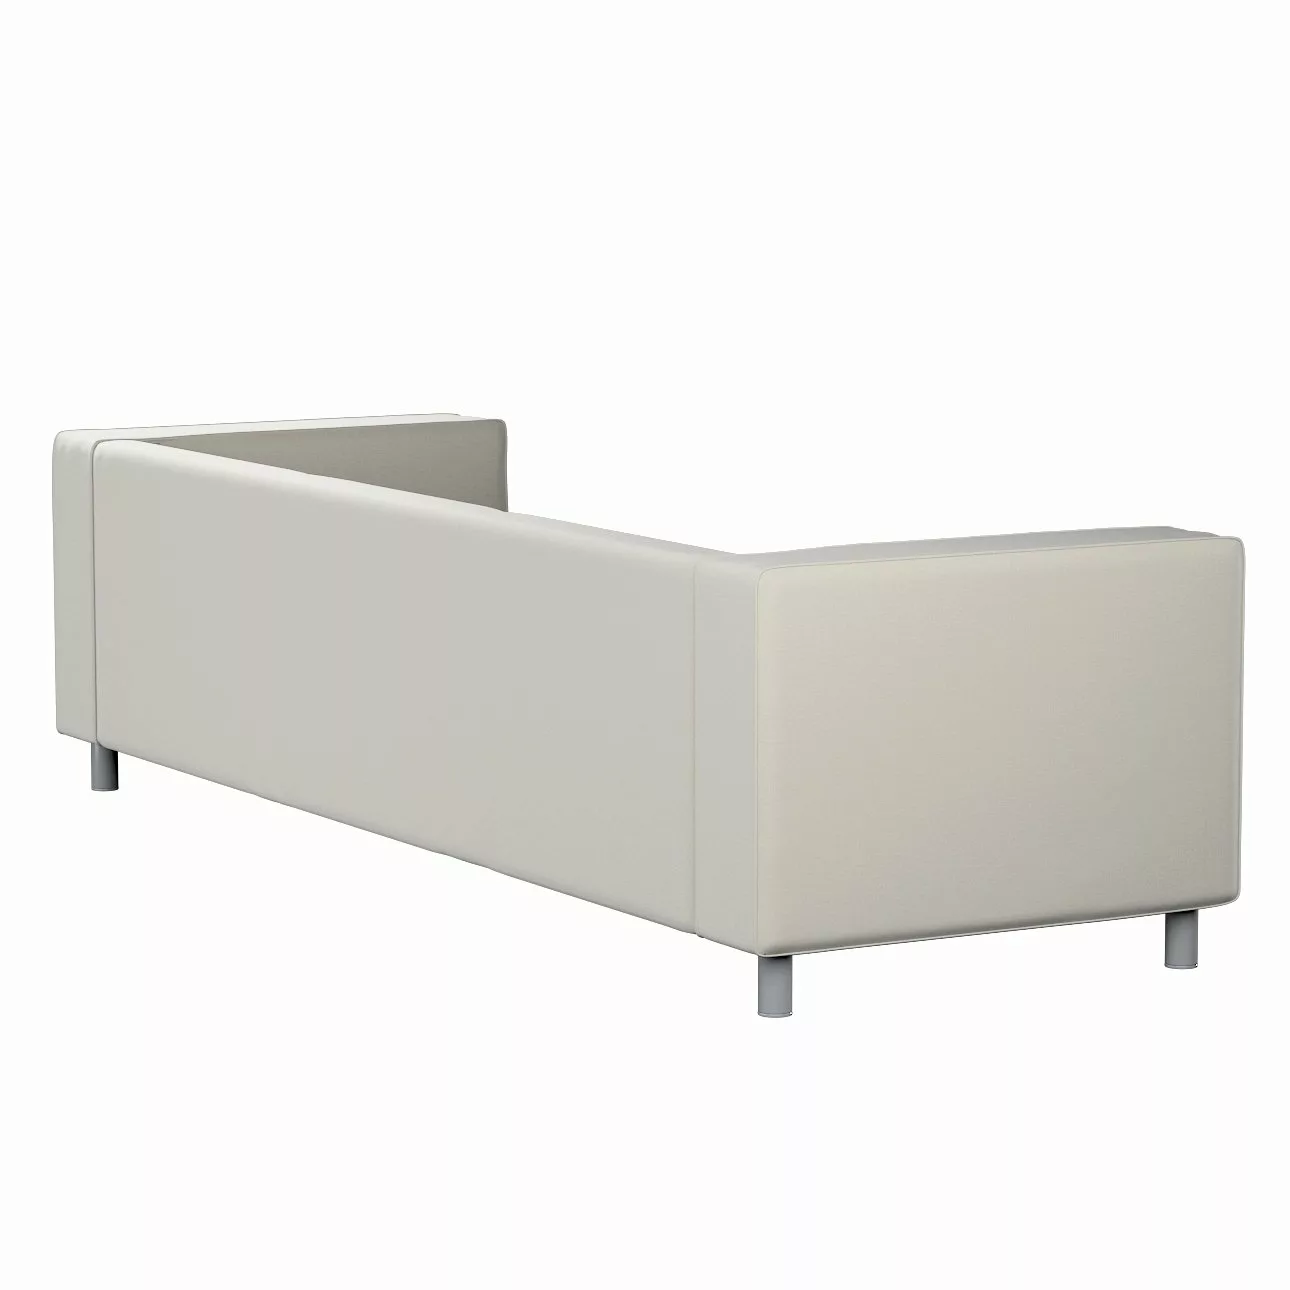 Bezug für Klippan 4-Sitzer Sofa, grau, Bezug für Klippan 4-Sitzer, Ingrid ( günstig online kaufen